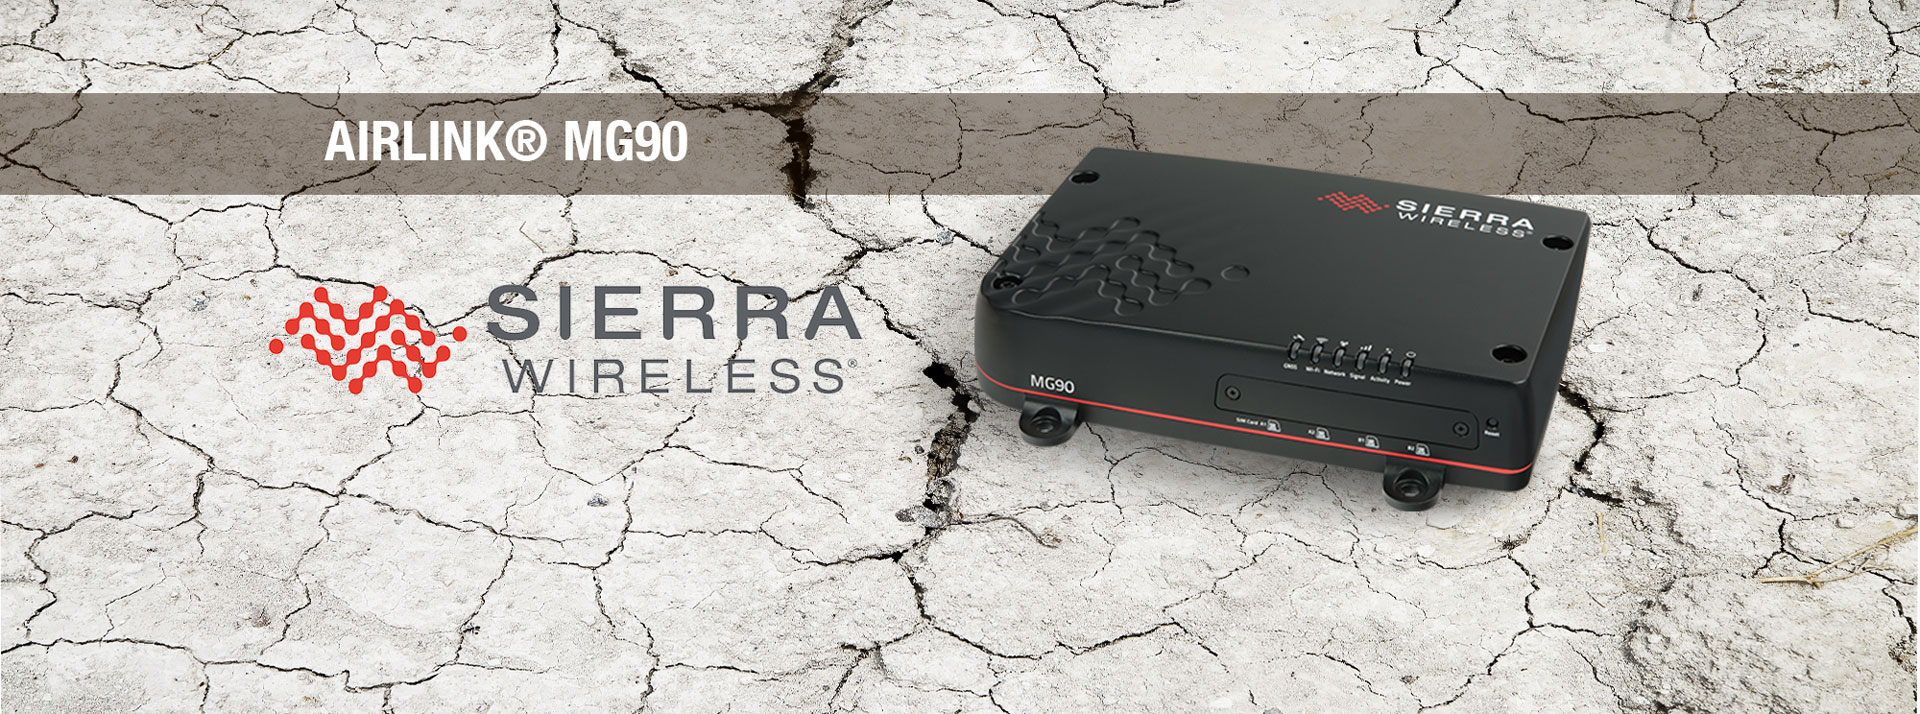 Sierra Wireless Airlink MG90